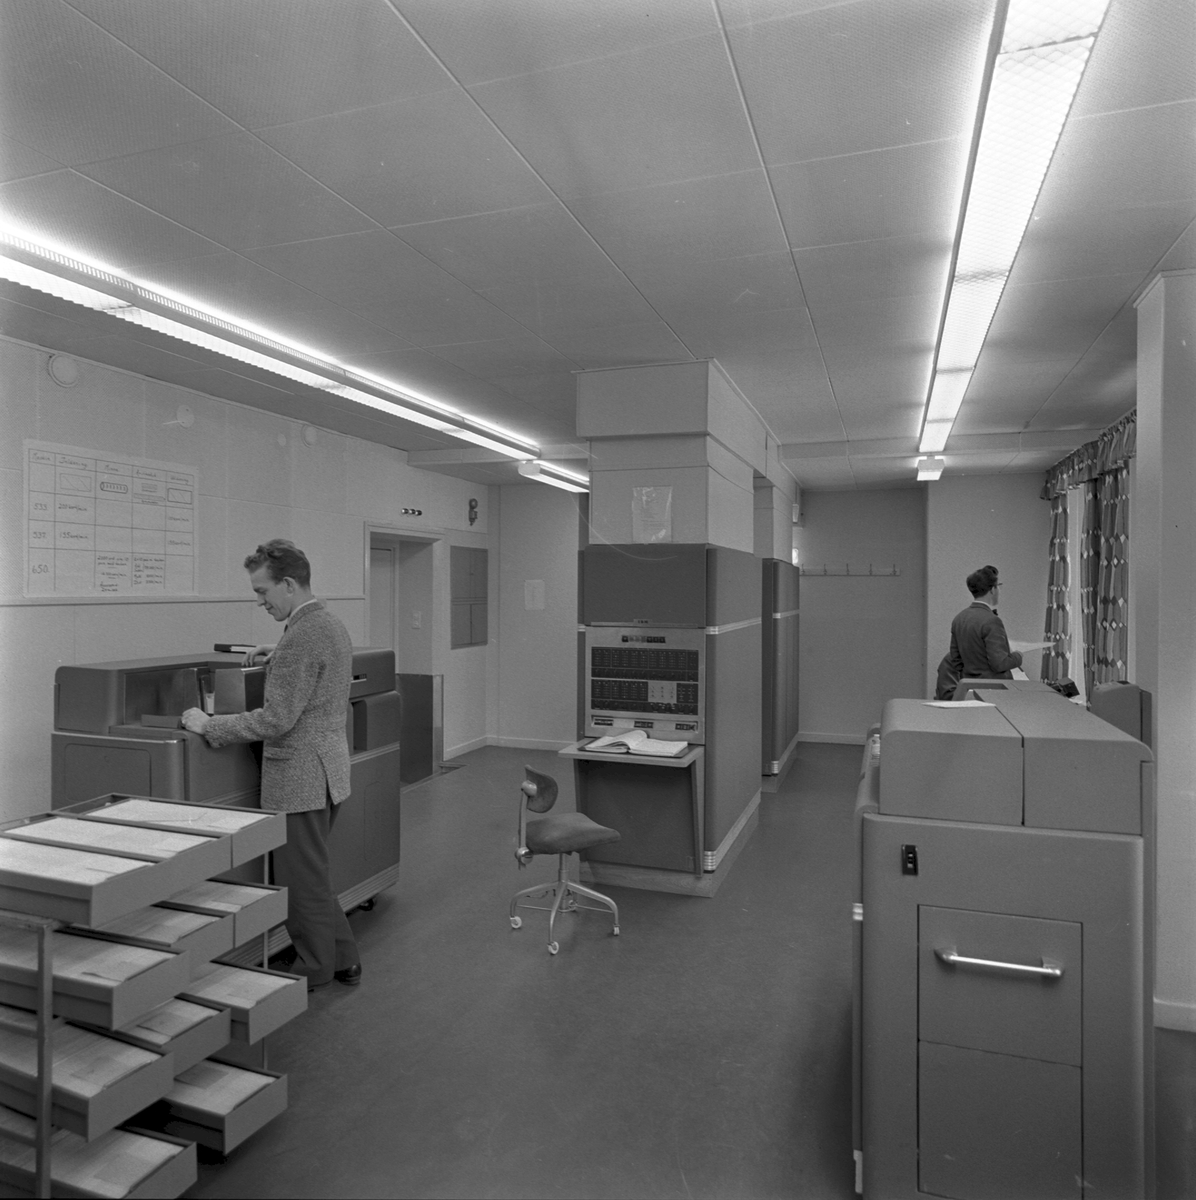 Datorrum vid Statens Järnvägar, SJ innehållandes en tidig IBM-dator med tillbehör. IBM 650 Magnetic Drum Data Processing Machine. I mitten syns användarkonsollen och till höger och vänster syns kombinerade hålkortläsare/skrivare, IBM 533 och/eller IBM 537.